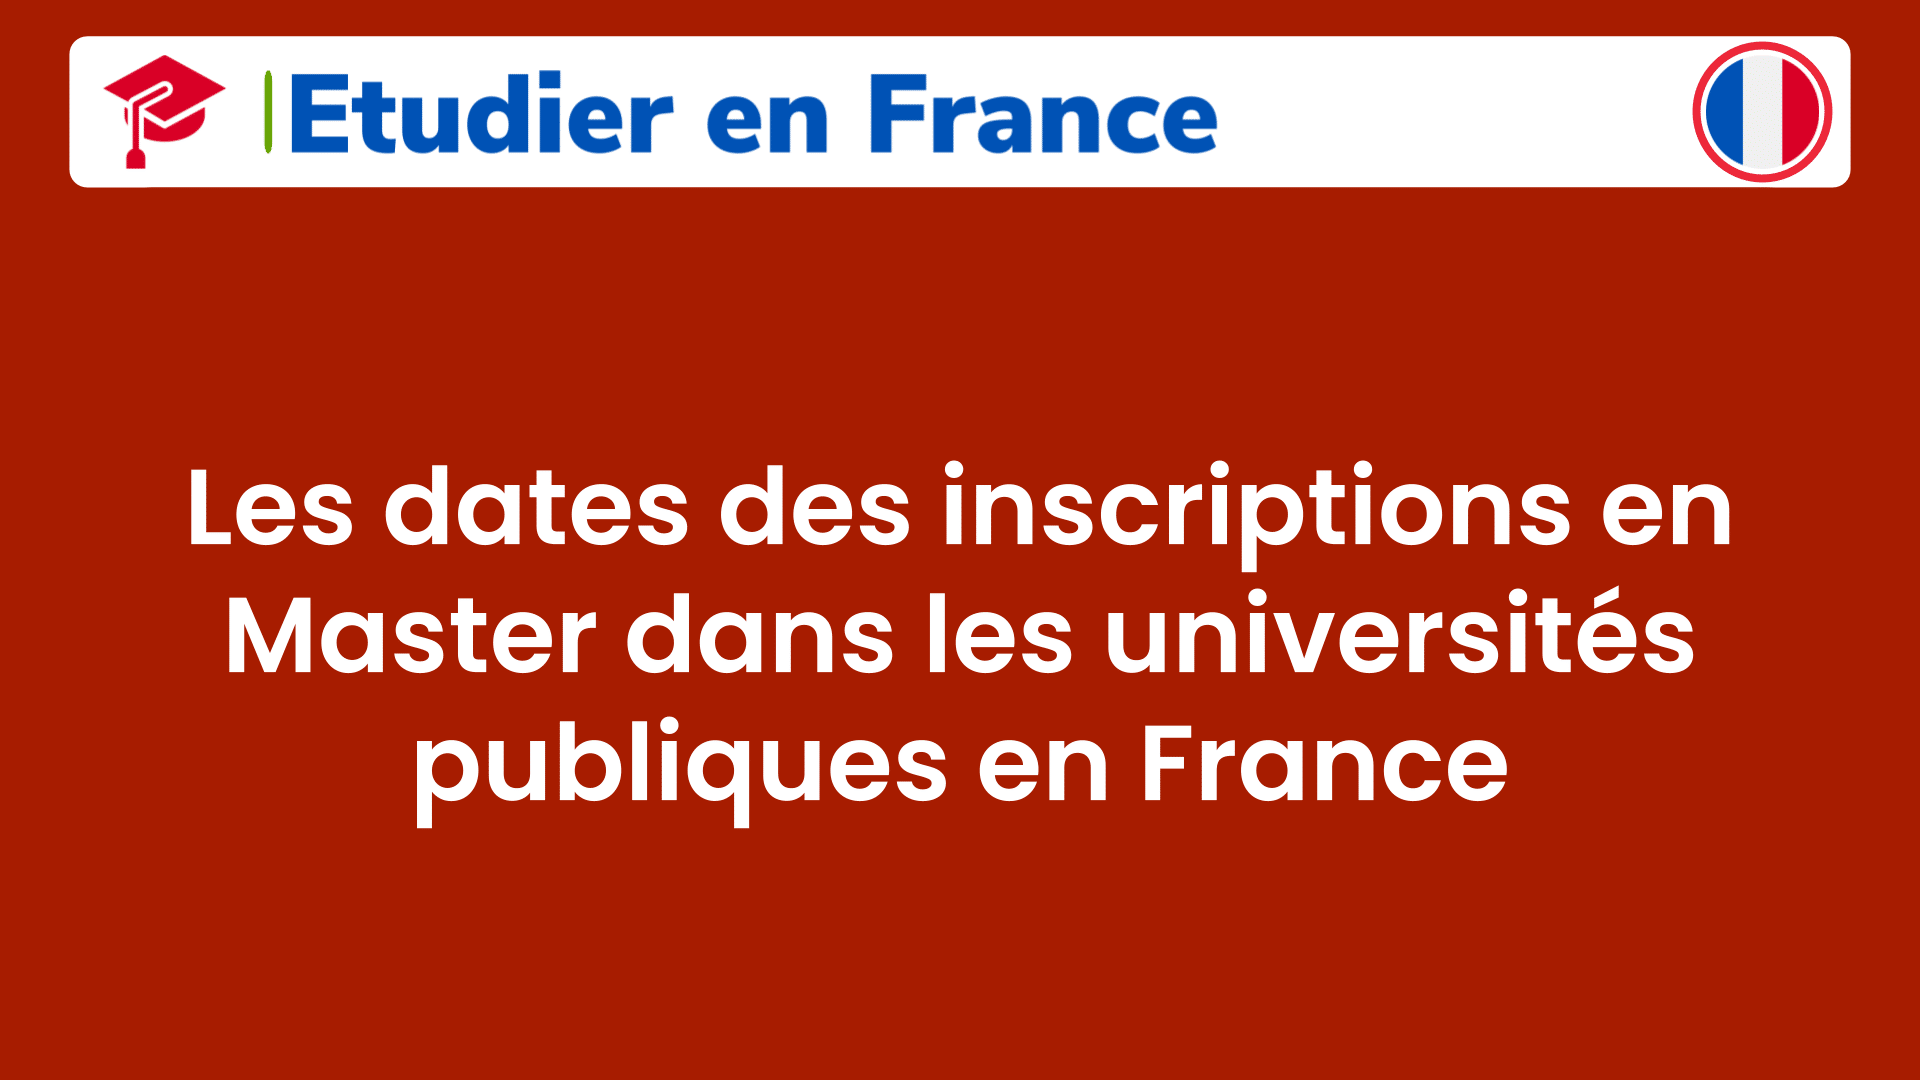 Les dates des inscriptions en Master dans les universités publiques en France